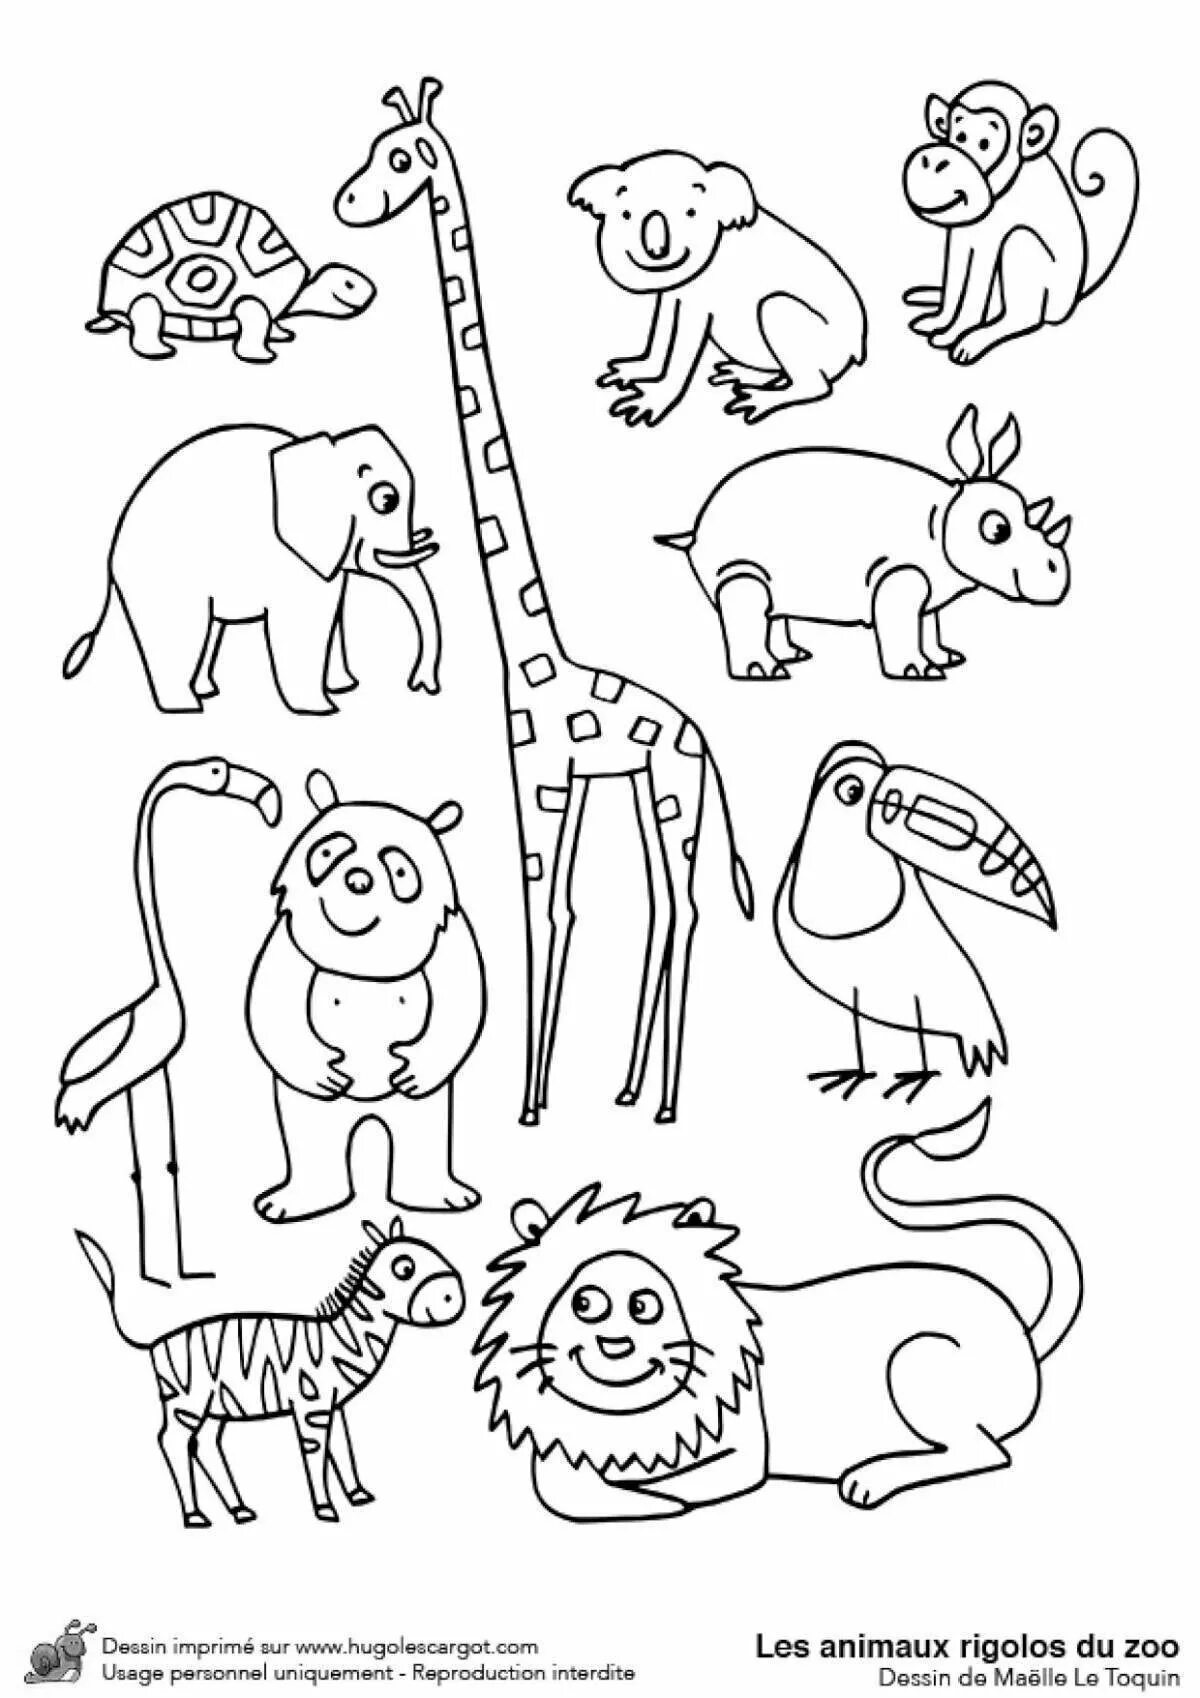 Рисуем животных зоопарка. Раскраска зоопарк. Раскраски животные для детей. Животные зоопарка раскраски для детей. Раскраска для малышей. Зоопарк.